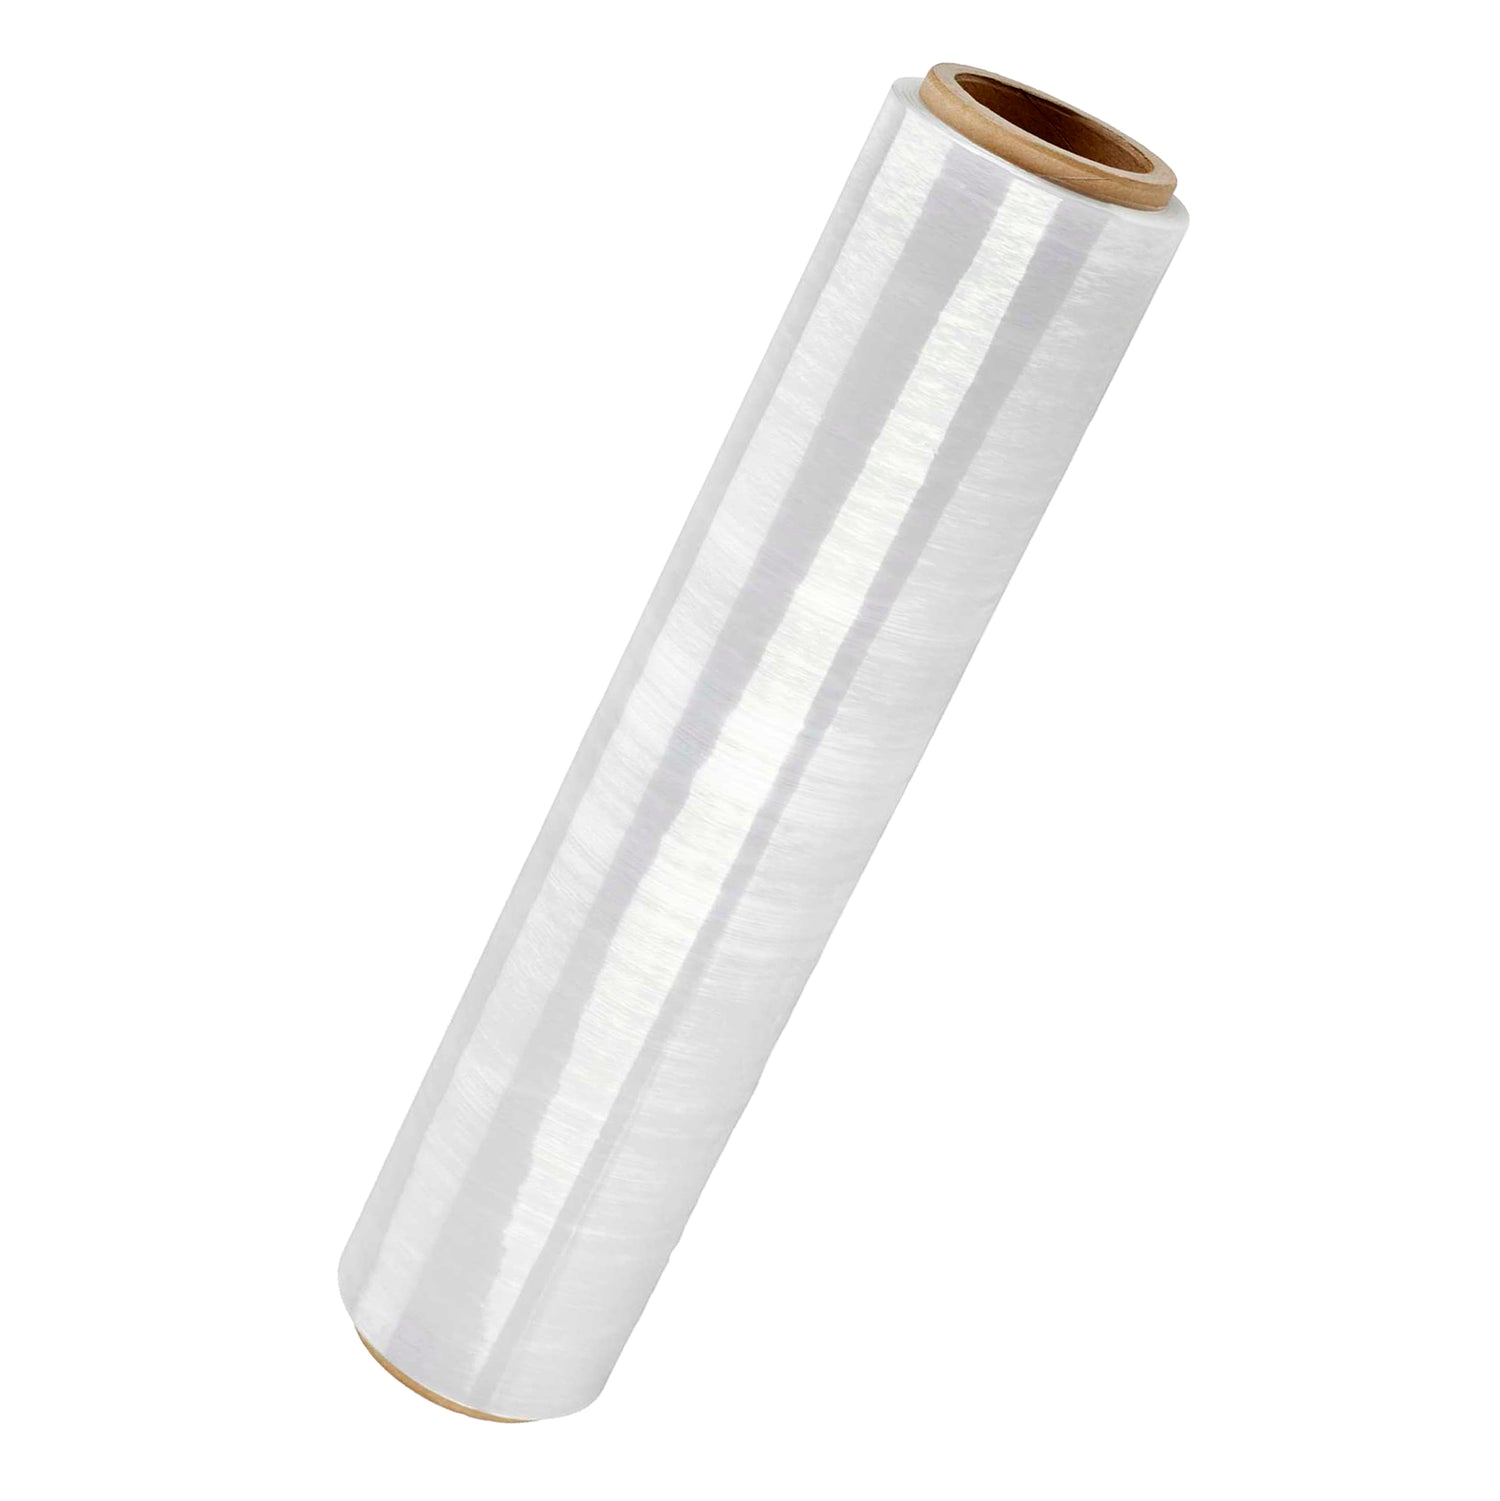 Packaging Wrap 透明包裝綑膜